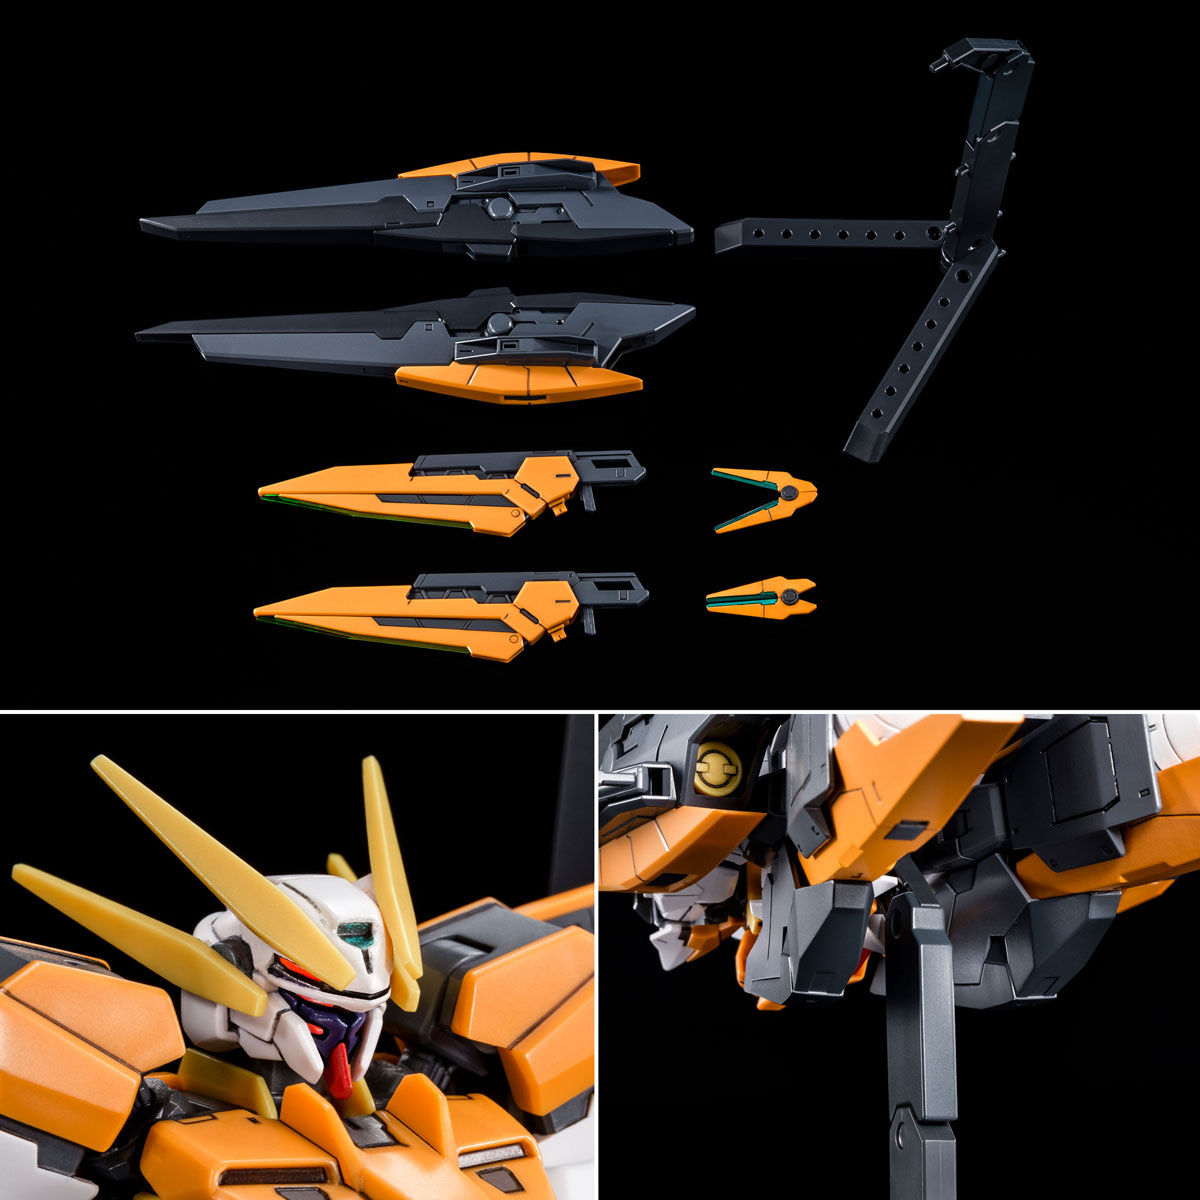 HG00 1/144 GN-011 Gundam Harute(Final Battle)